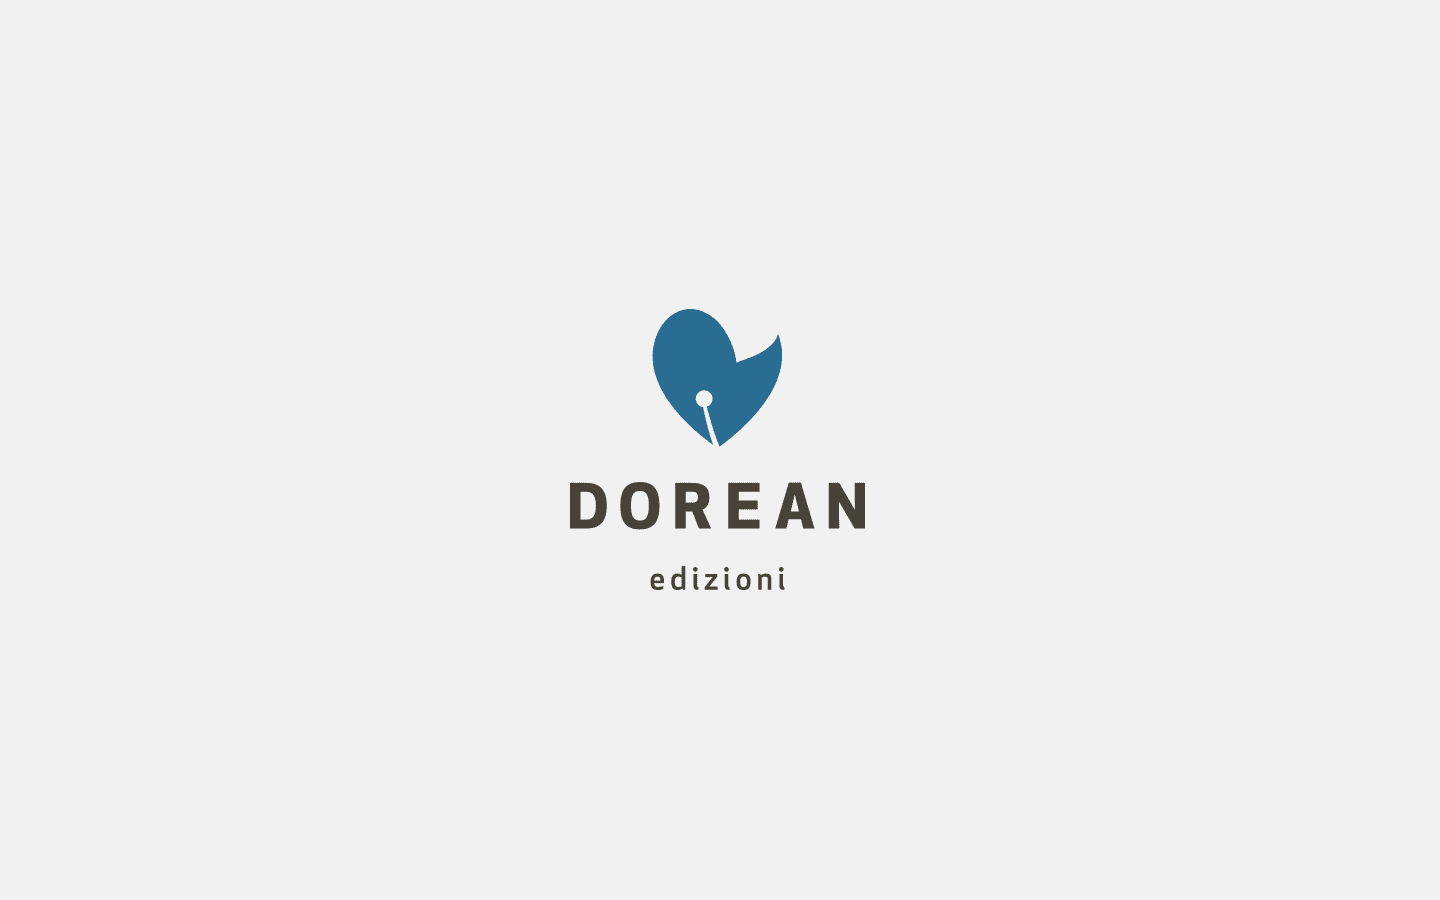 Dorean Edizioni Brand Identity